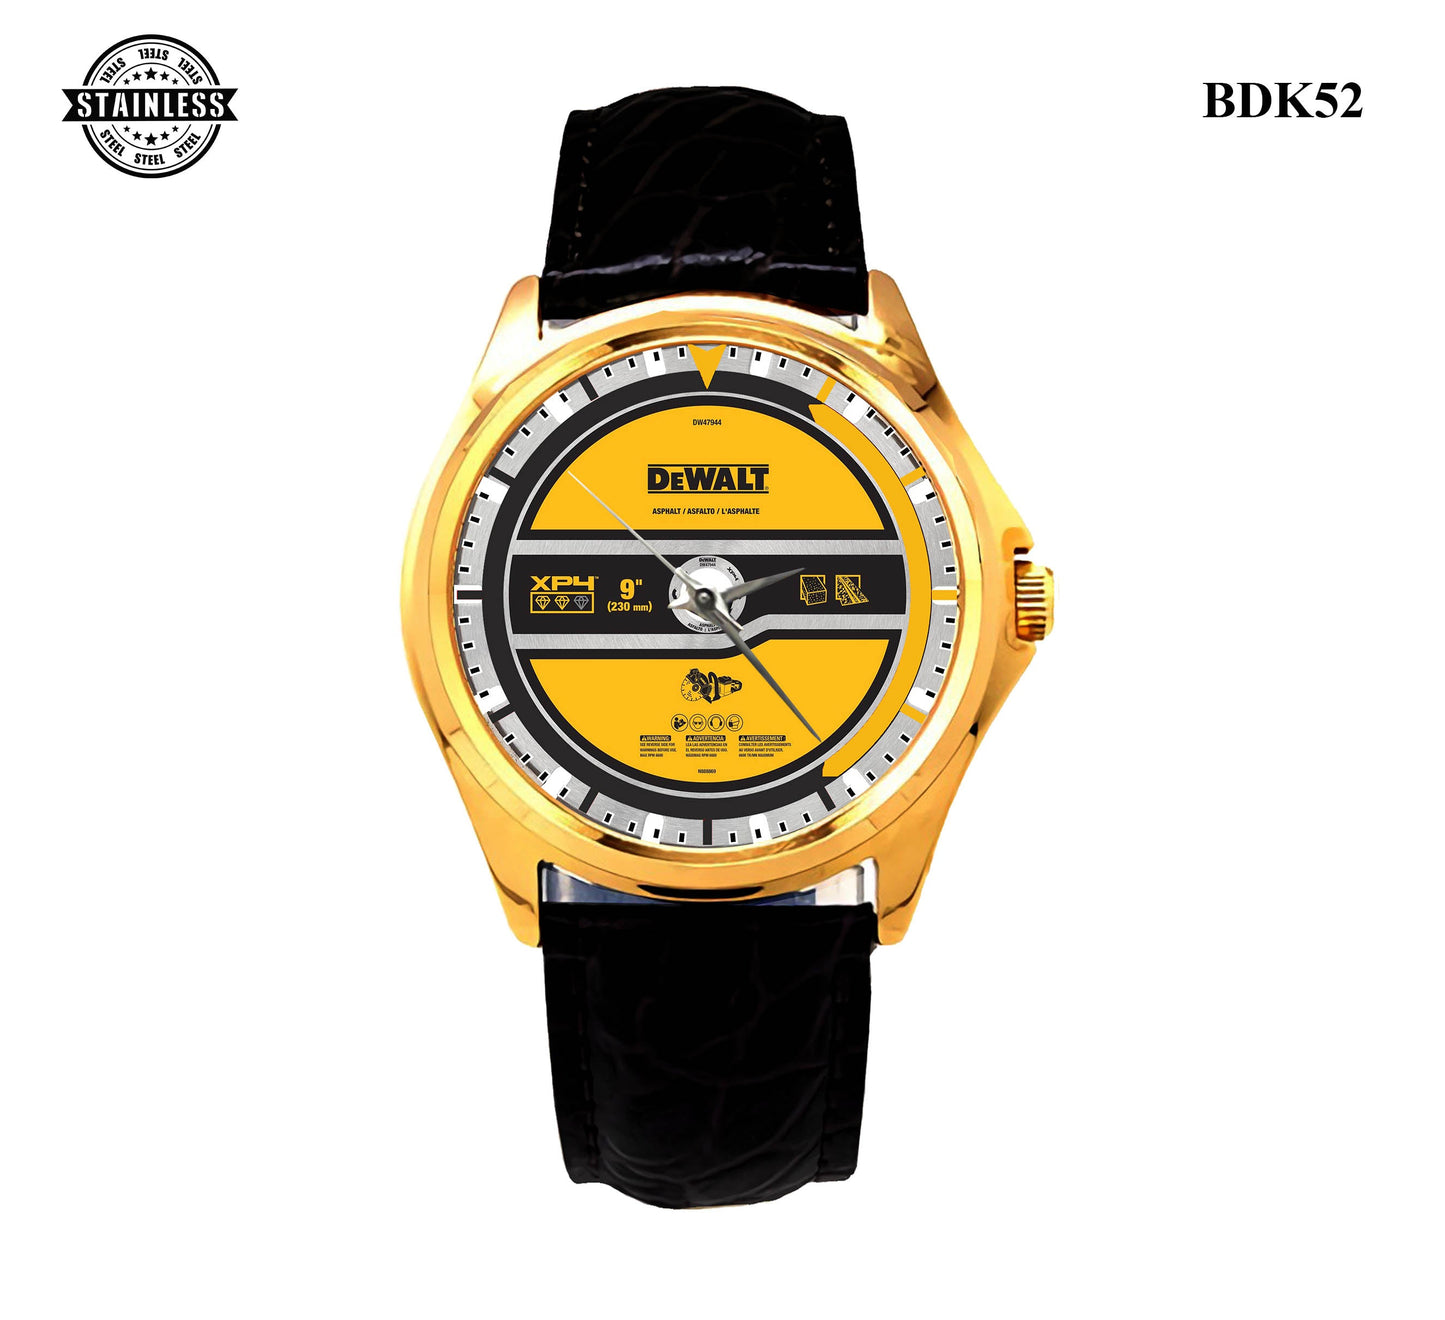 Dewalt DW47944 Watches Bdk52